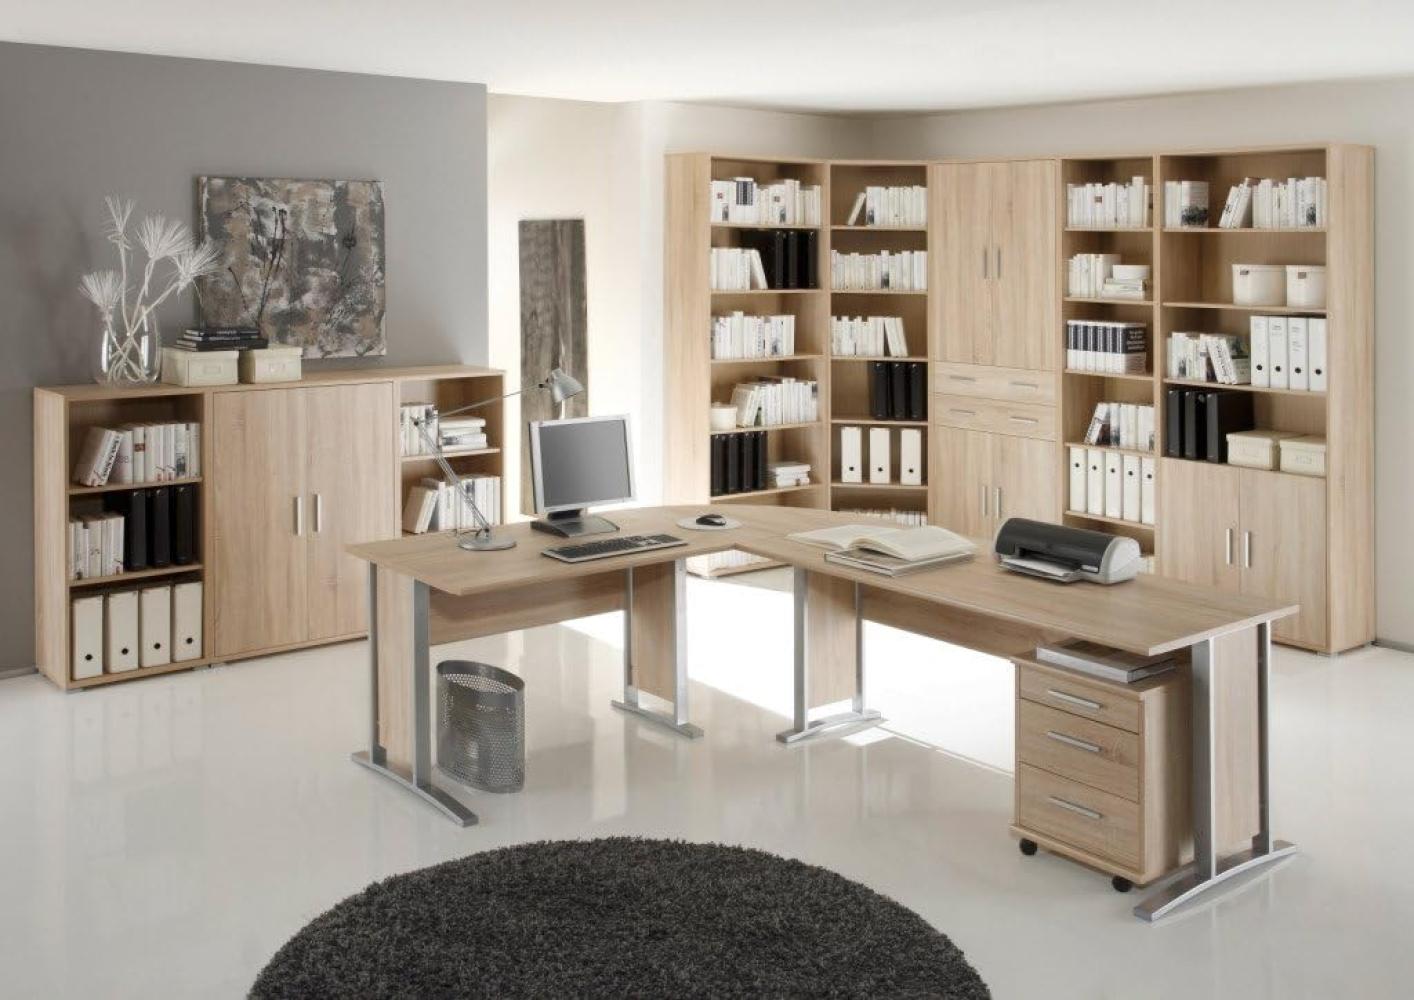 OFFICE LINE Büromöbel Komplettset in Eiche Sonoma Optik - Möbel Set 3-teilig bestehend aus Eckschreibtisch, Rollcontainer und Regalwand Bild 1